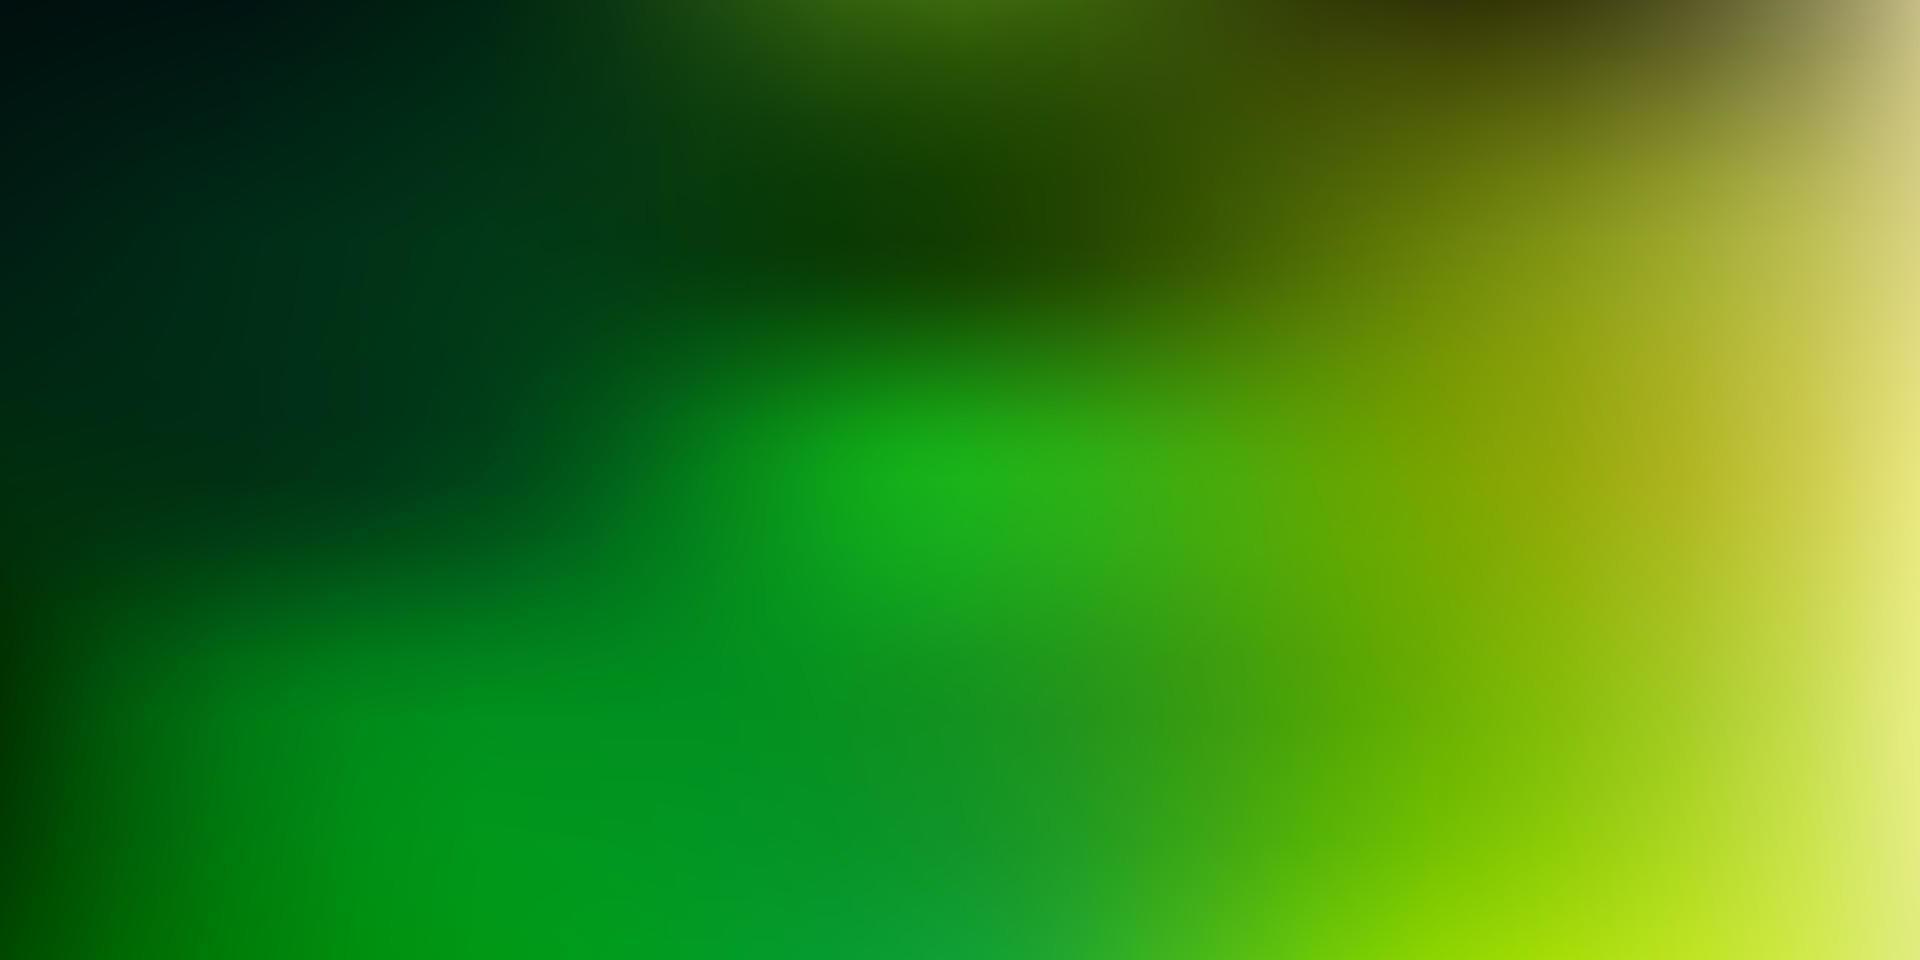 ljusgrön, gul vektor gradient oskärpa bakgrund.